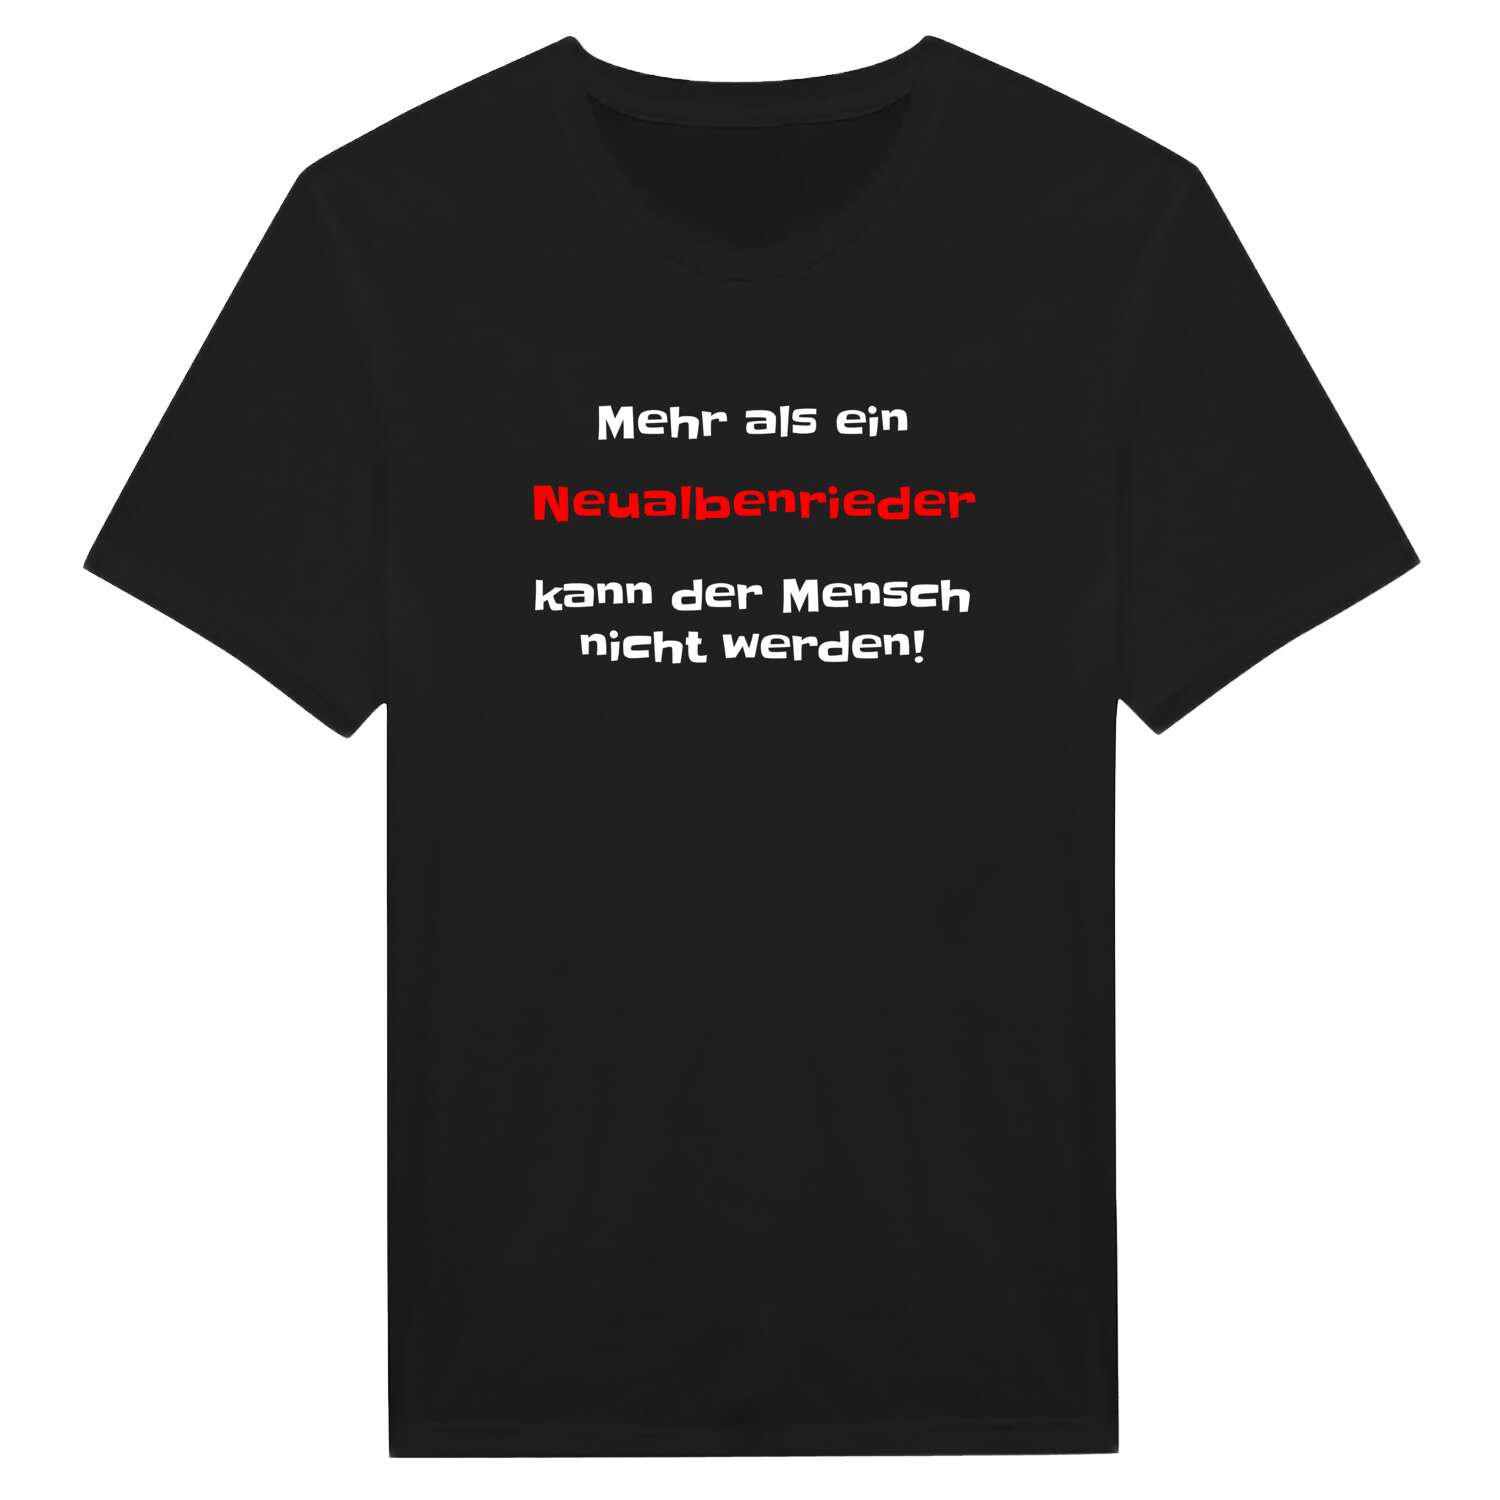 Neualbenried T-Shirt »Mehr als ein«